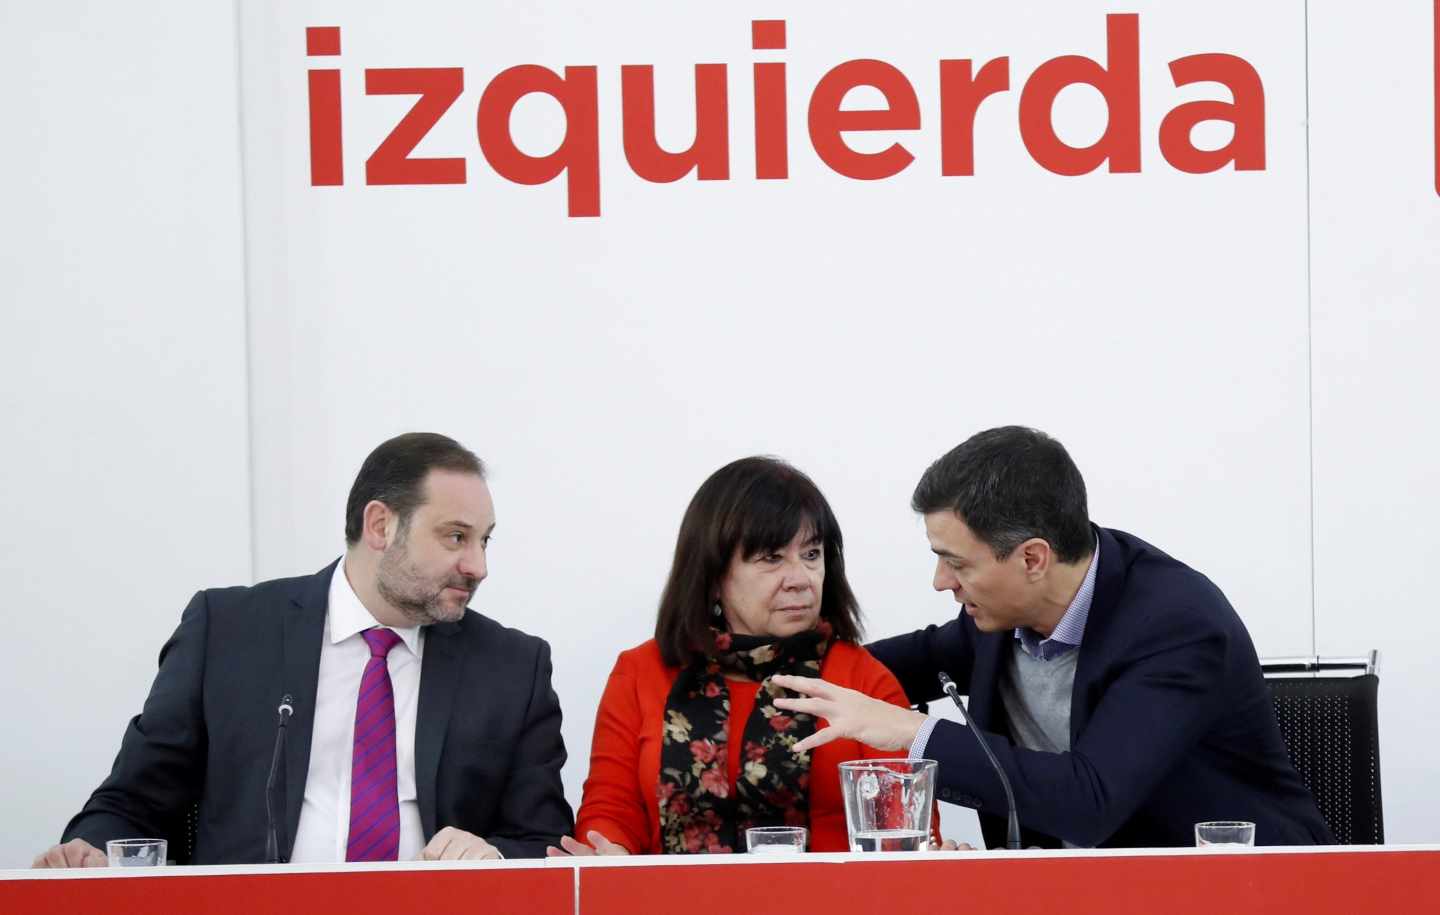 El PSOE se reúne con C's para cambiar la ley electoral aunque sólo sirva "de cara a la galería"